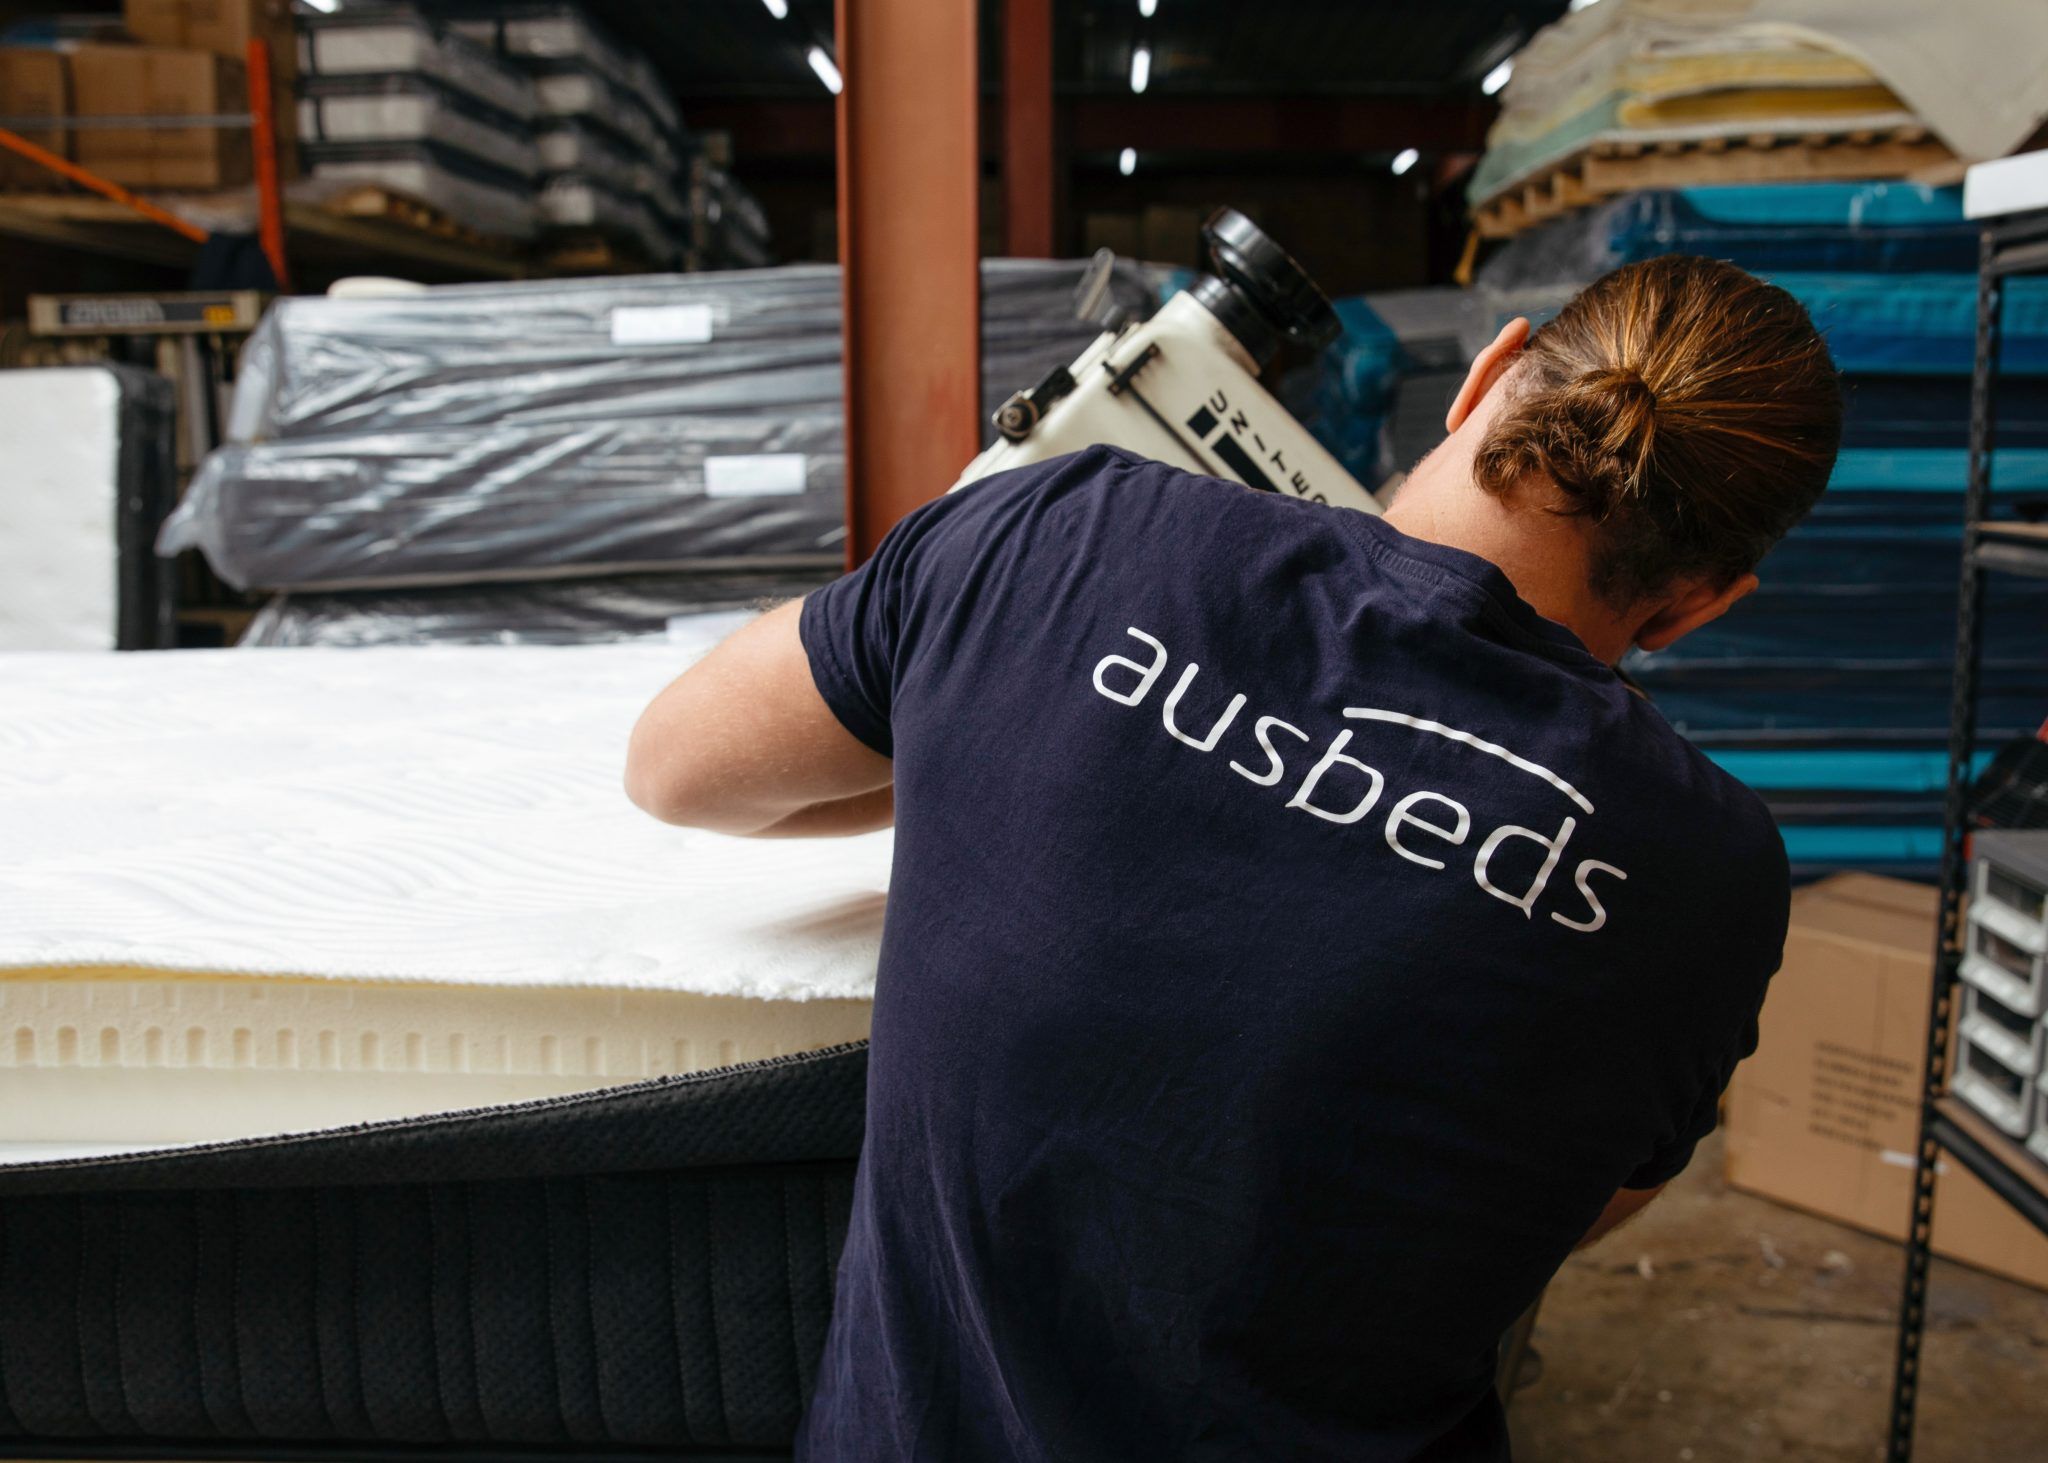 ausbeds mattress